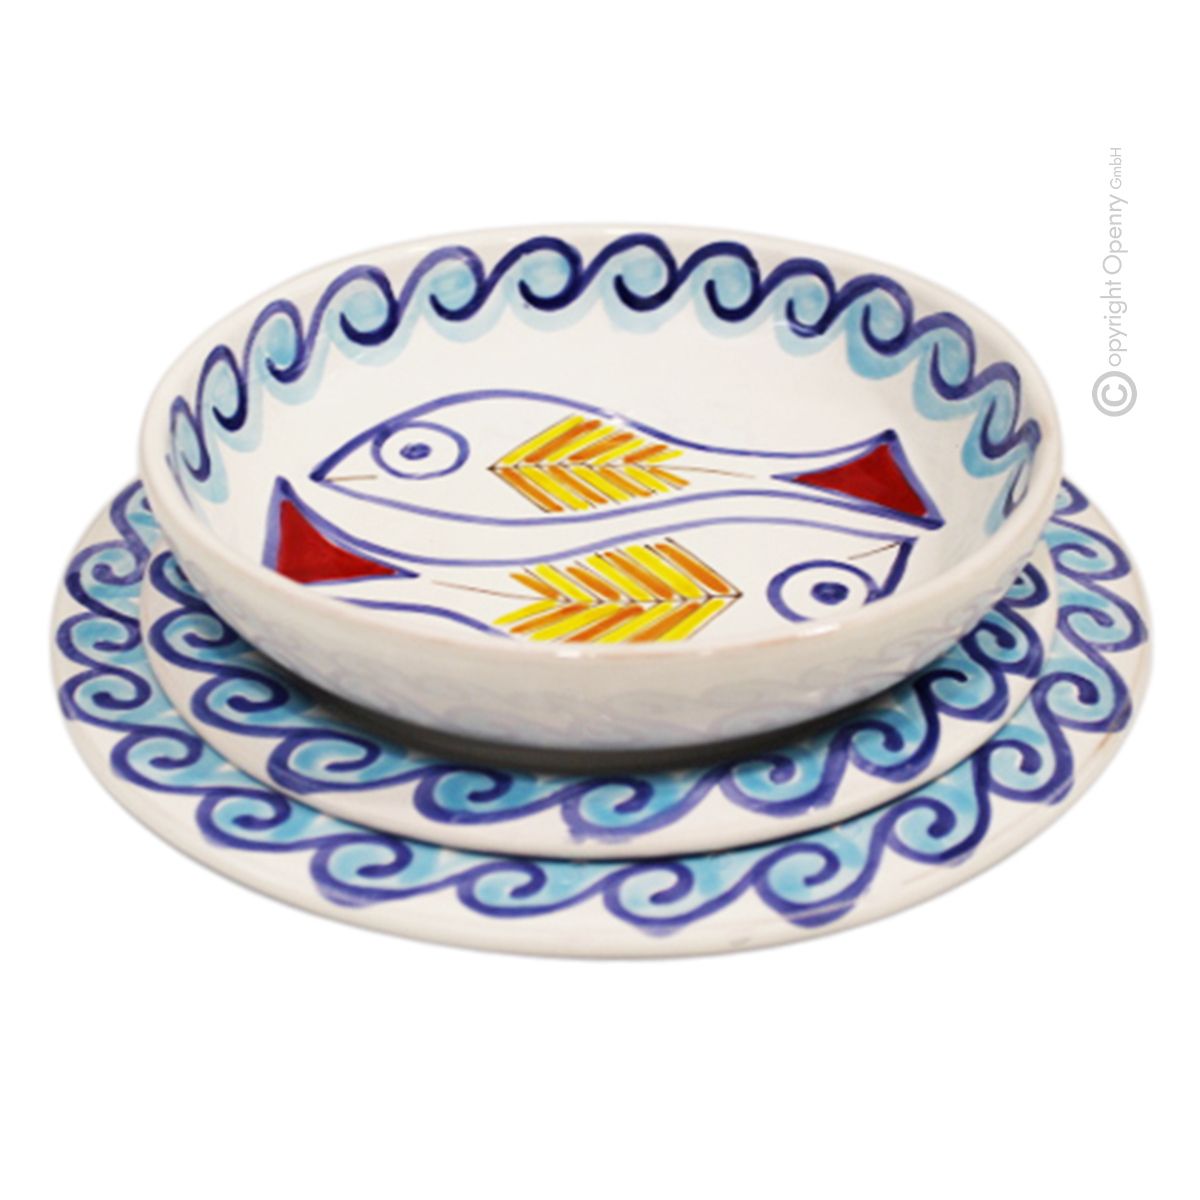 Boteghe - Real Made in Italy – Servizio da tavola ceramica artigianale